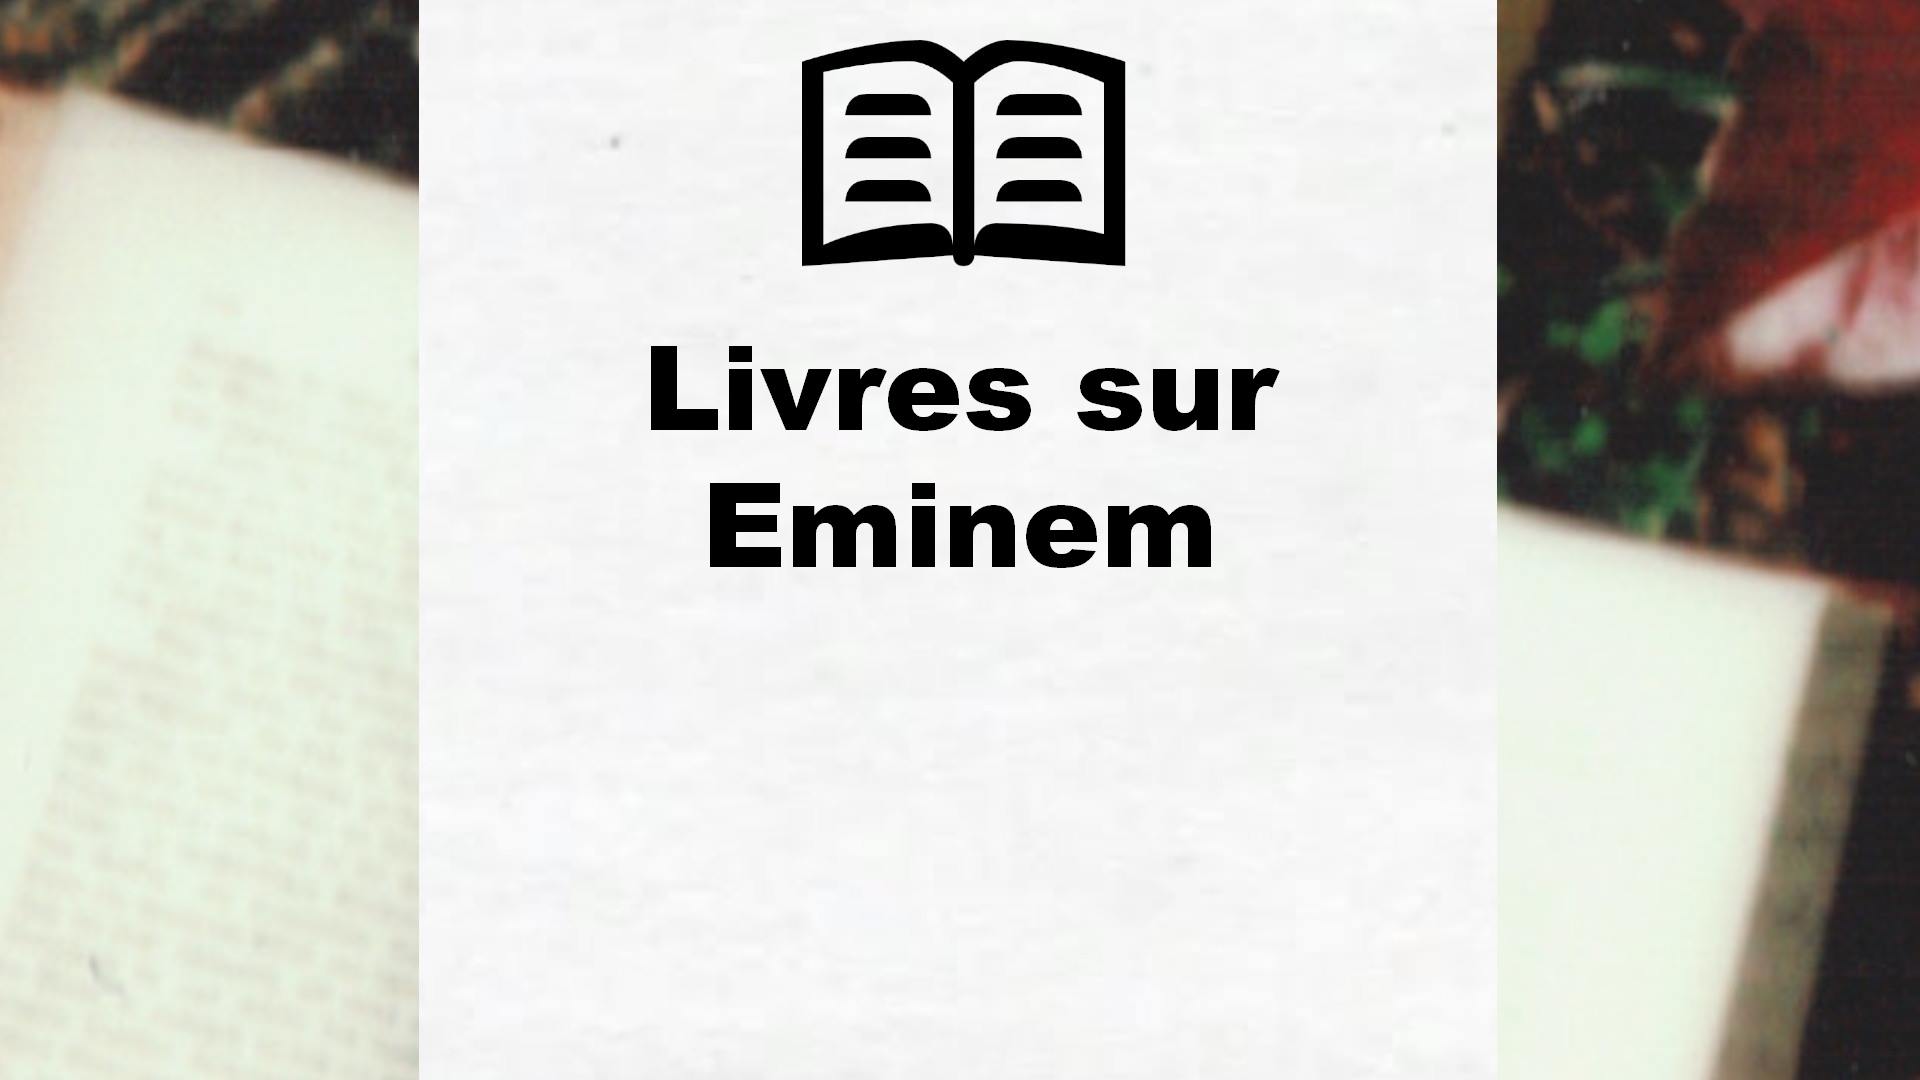 Livres sur Eminem